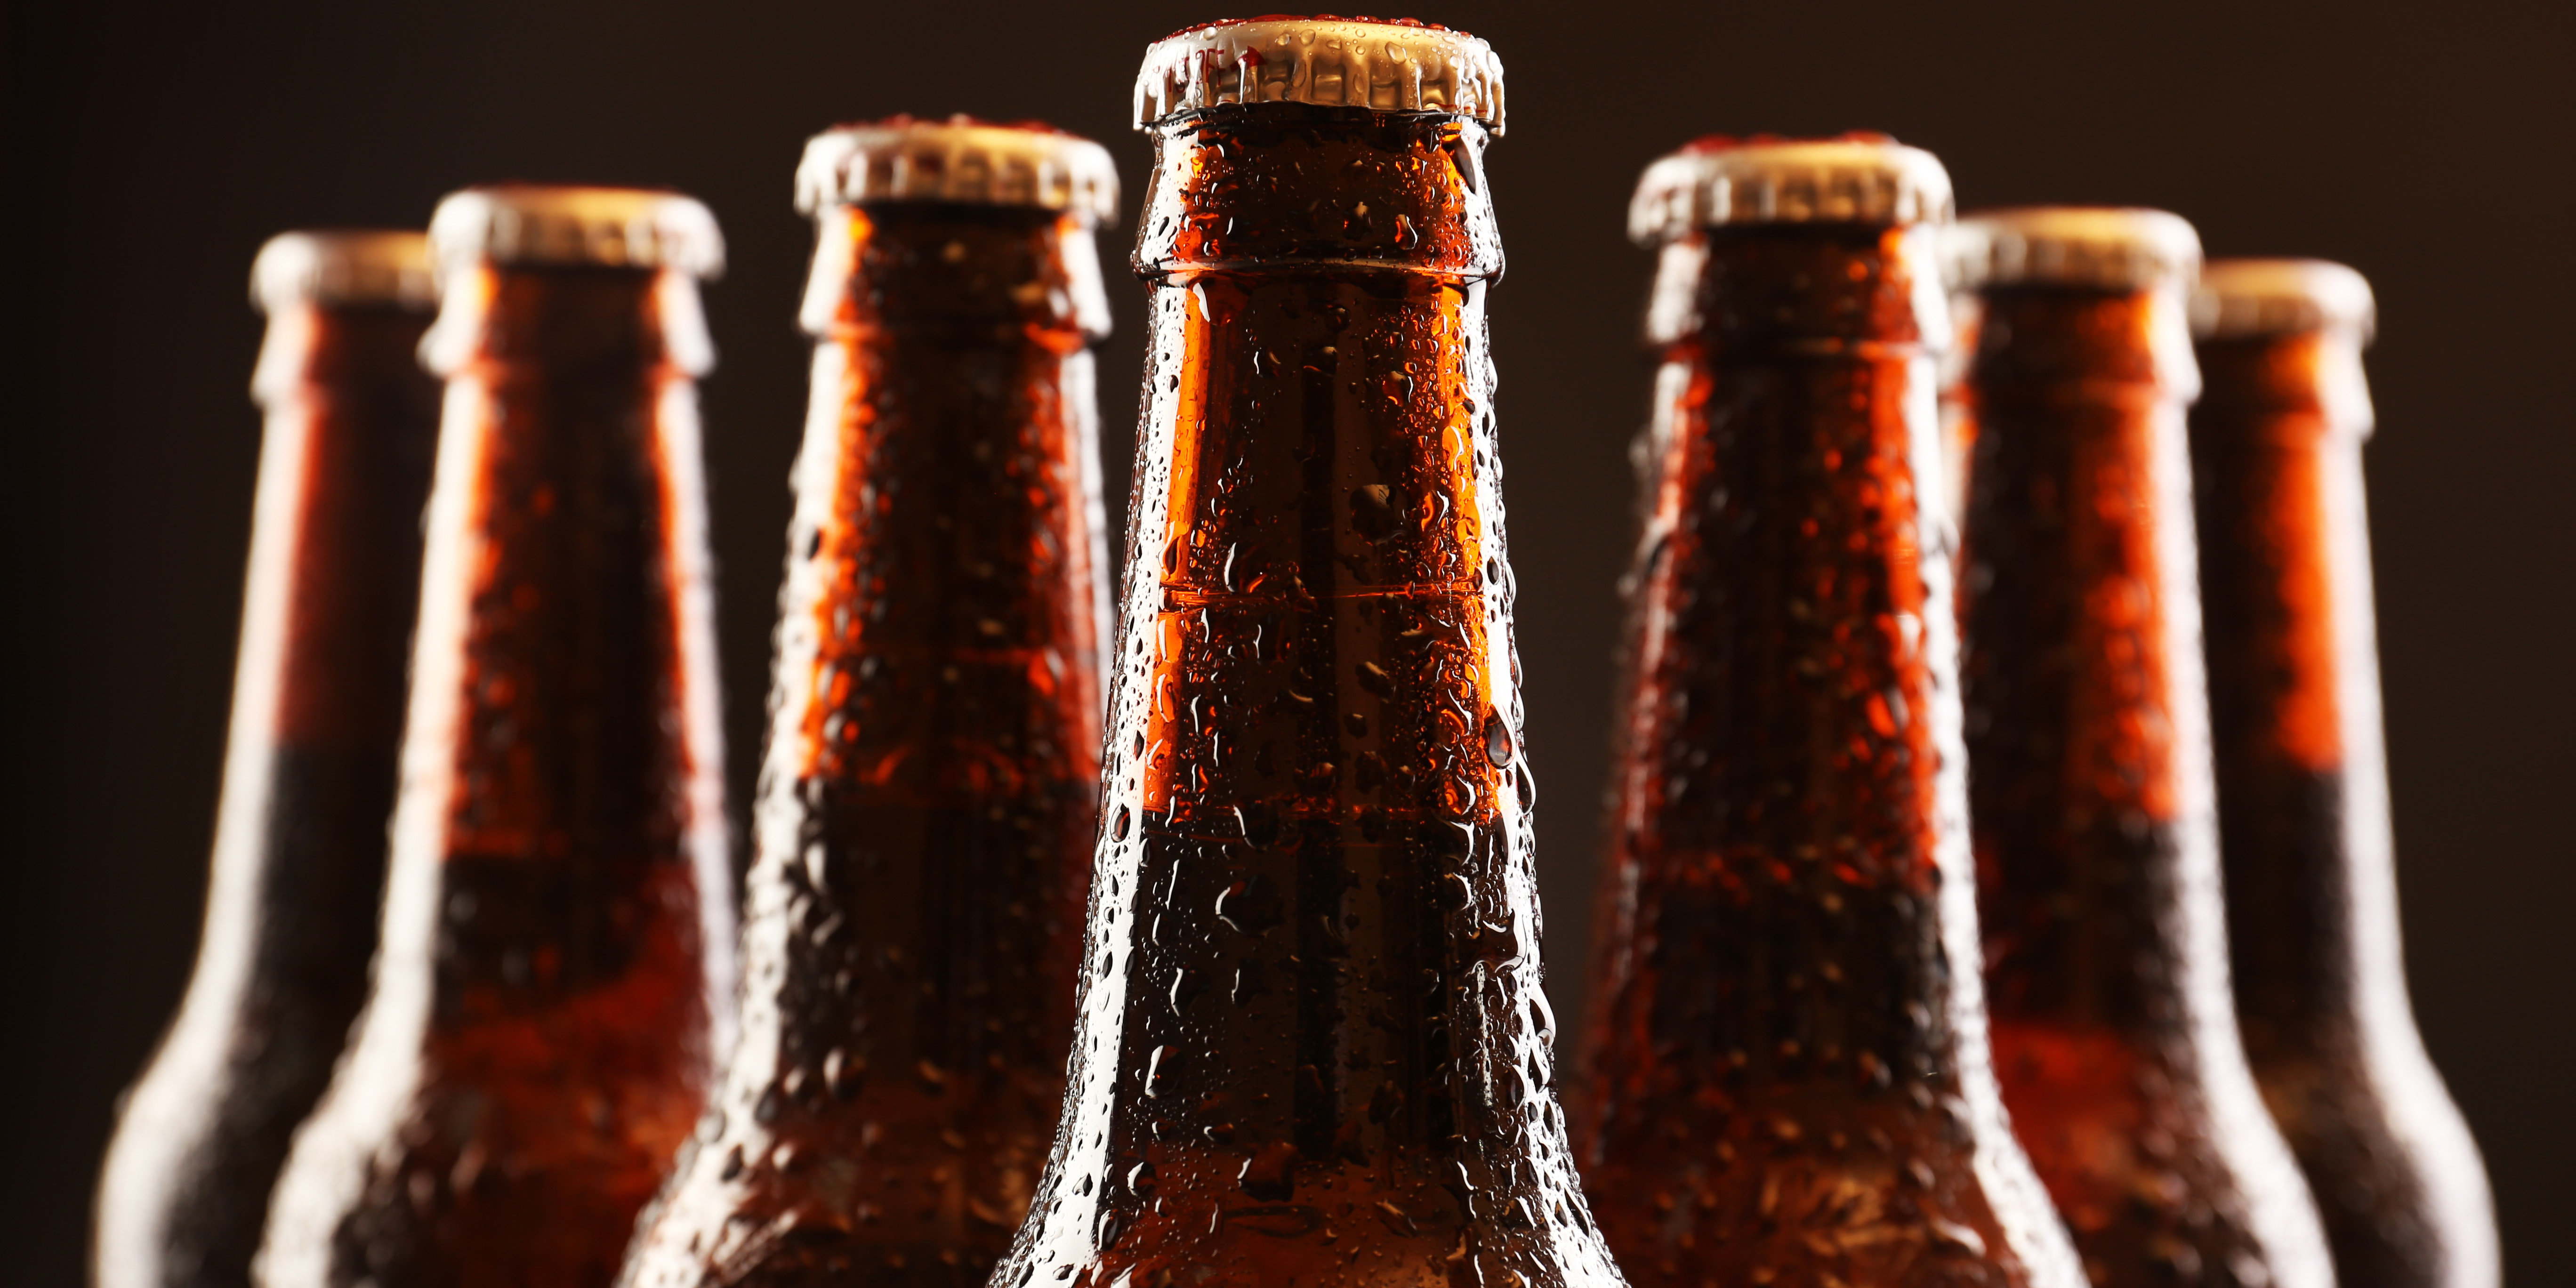 generic-beer-bottle-image